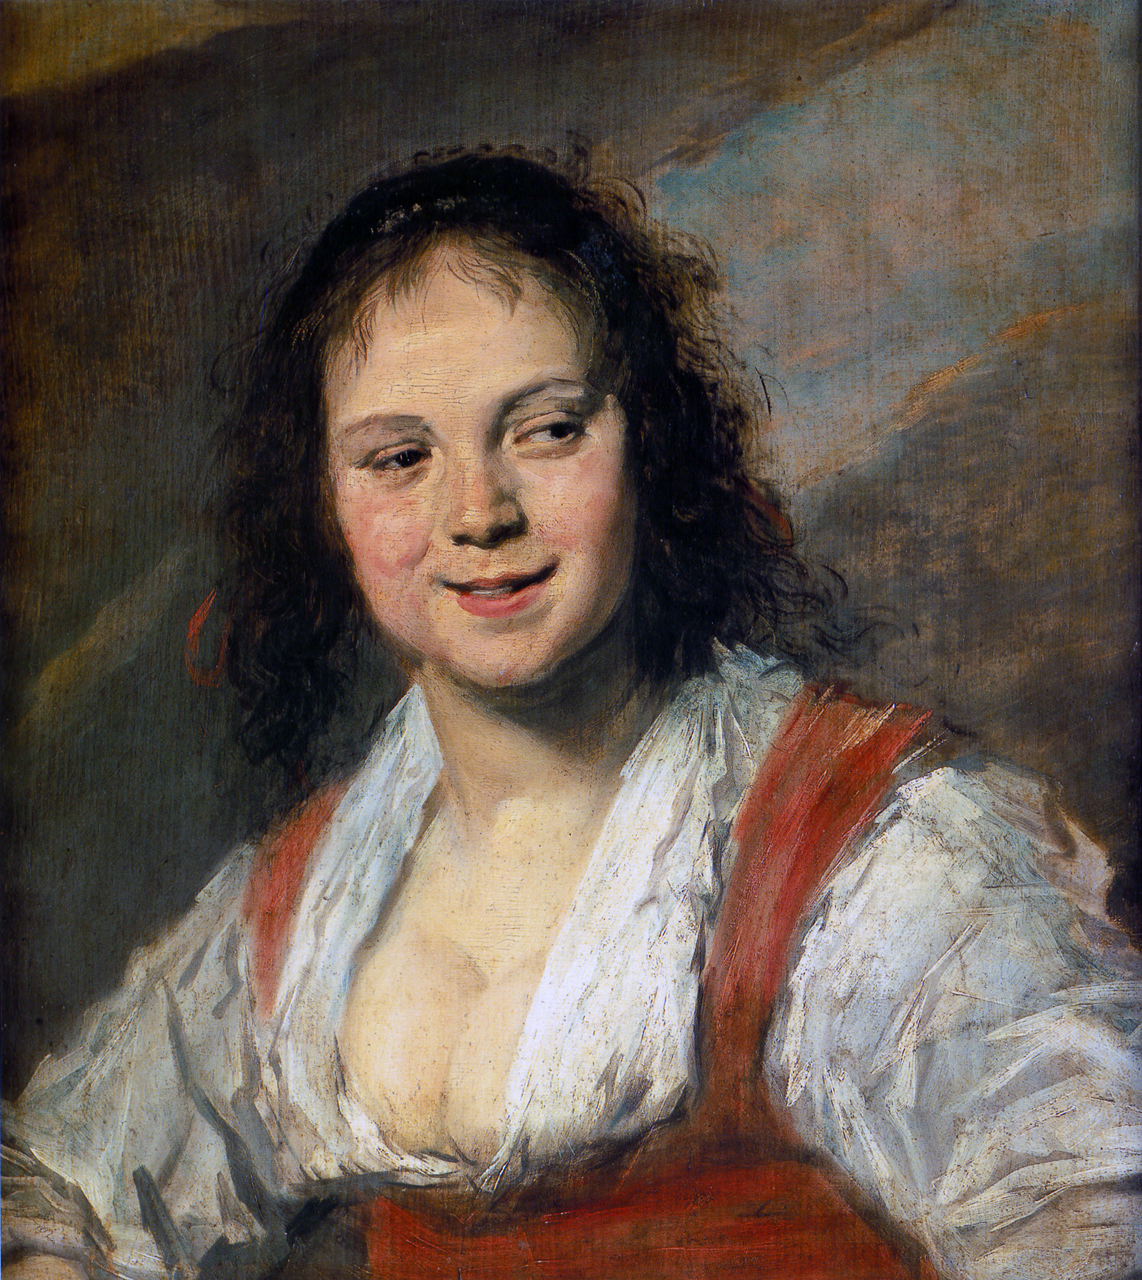 Frans Hals, Gypsy Girl, 1628